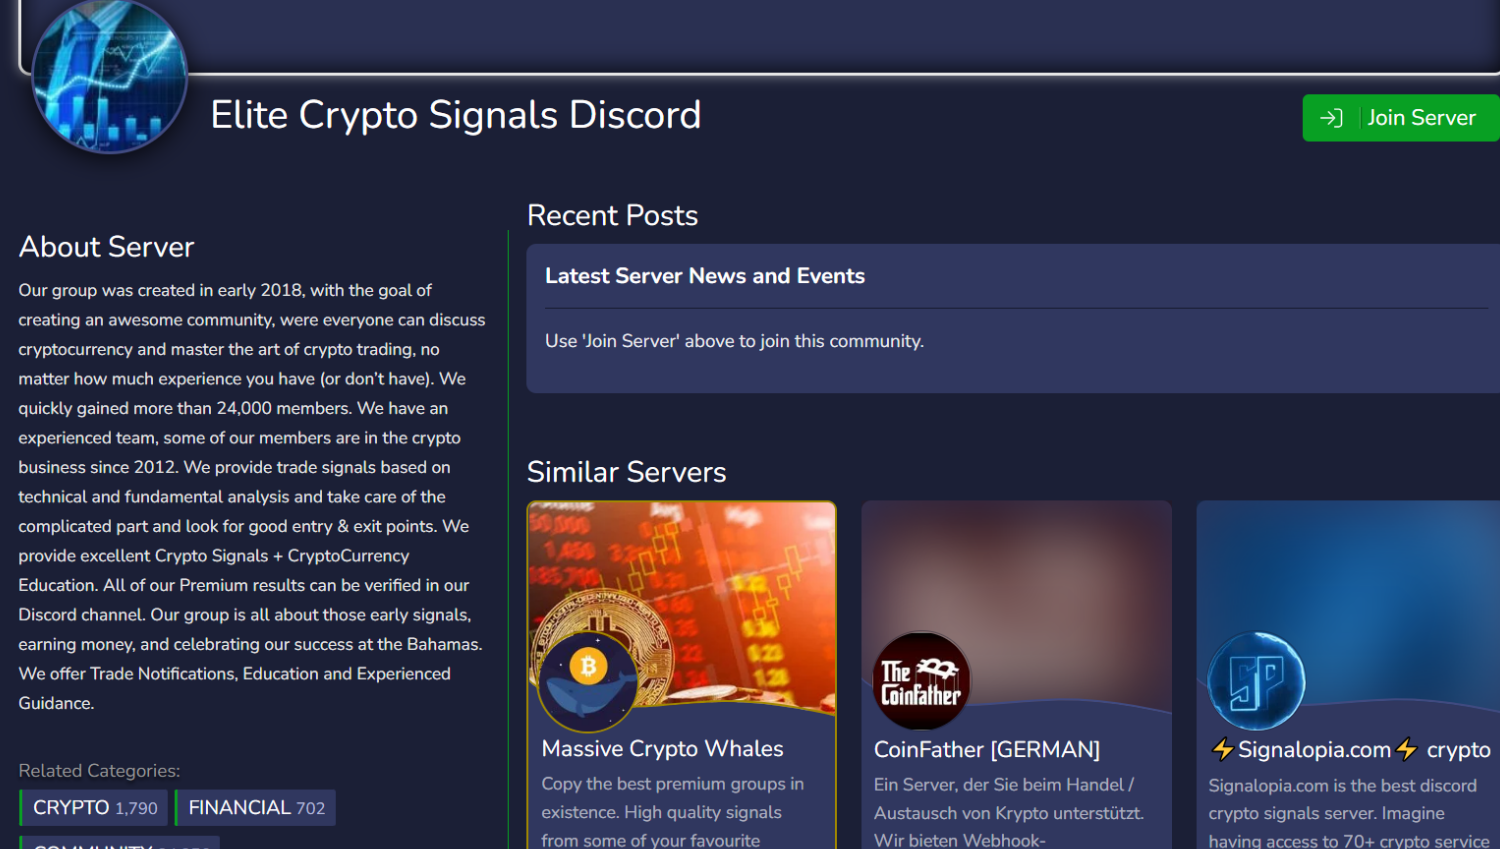 Elite Crypto Signals